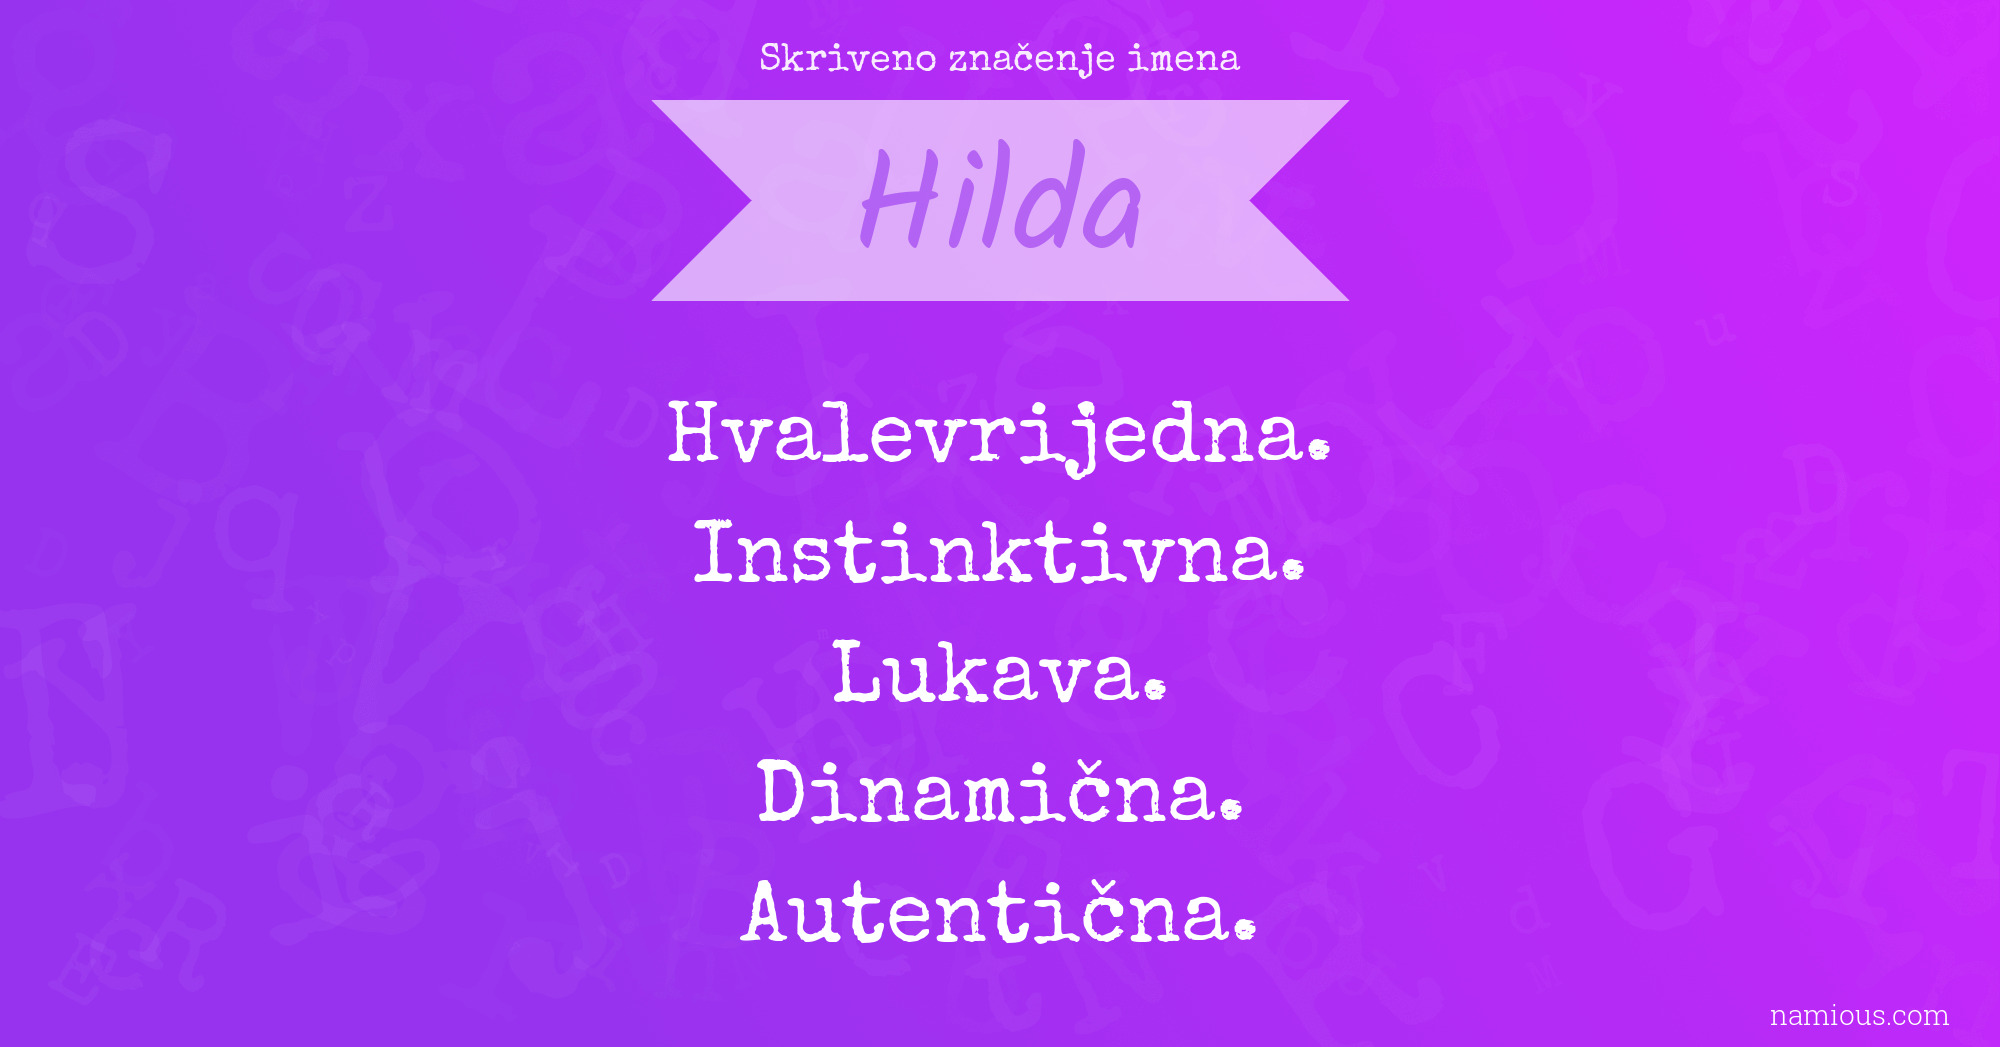 Skriveno značenje imena Hilda